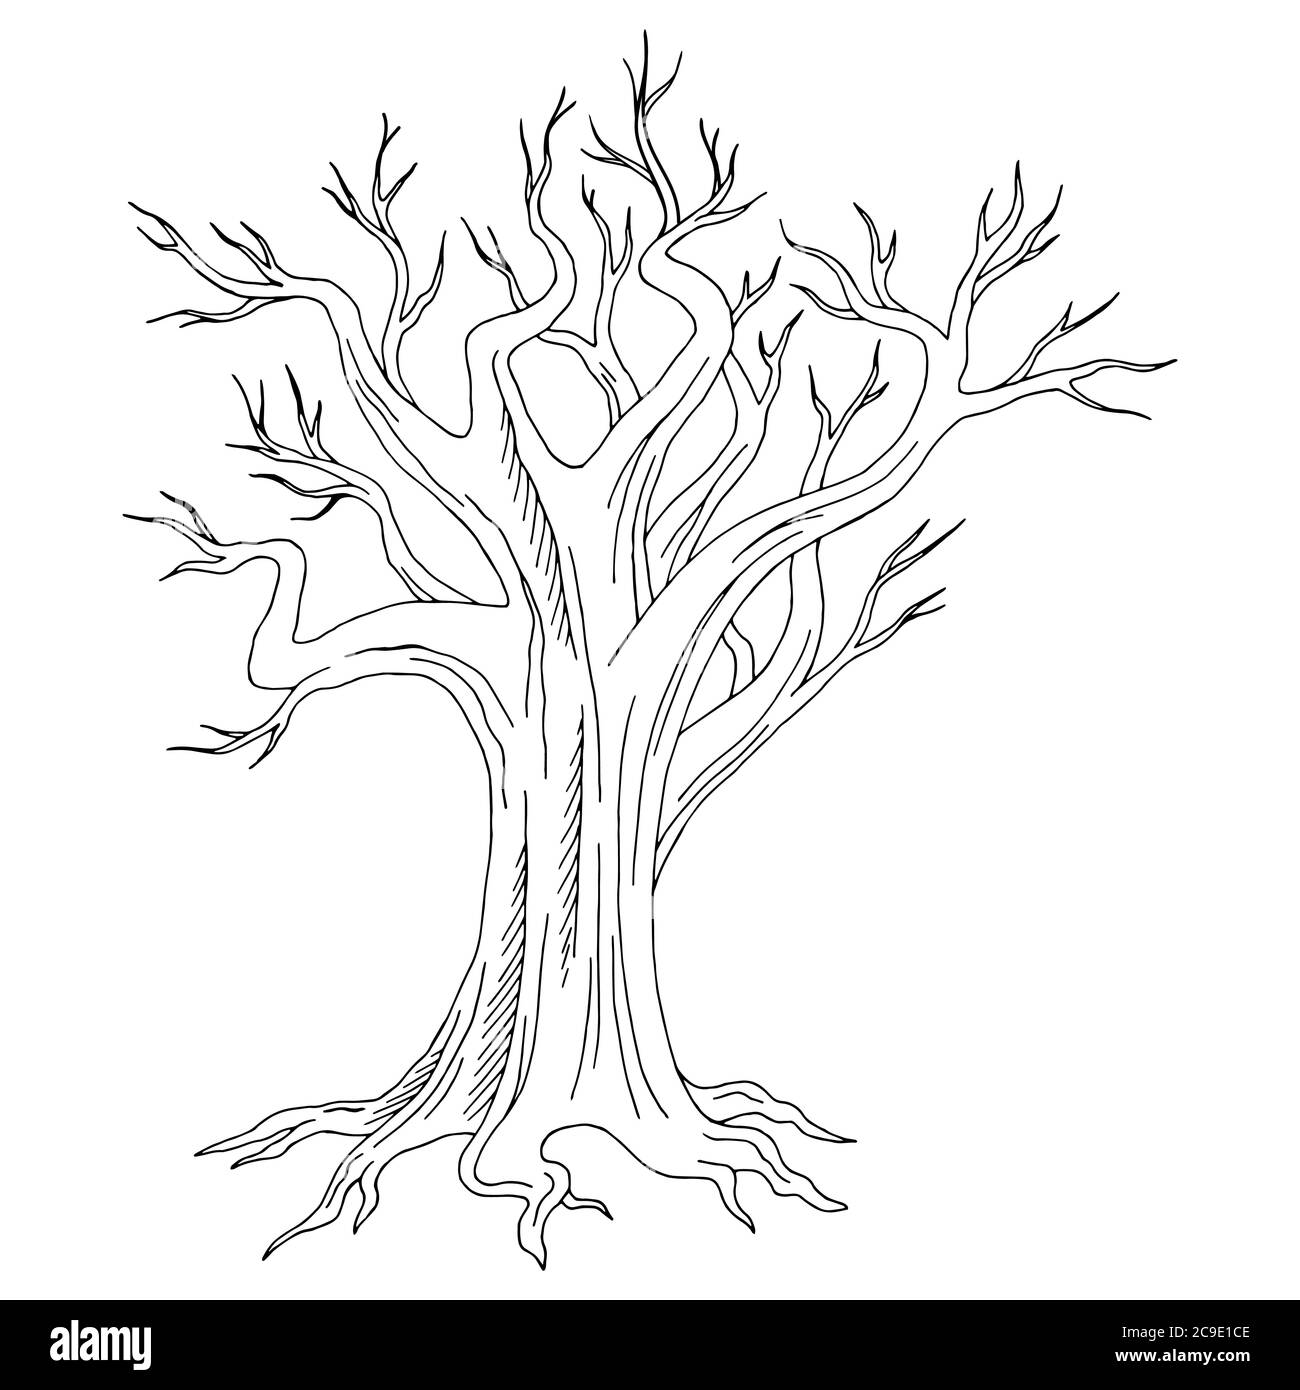 Vettore di illustrazione dello schizzo isolato di un vecchio albero grafico bianco nero Illustrazione Vettoriale